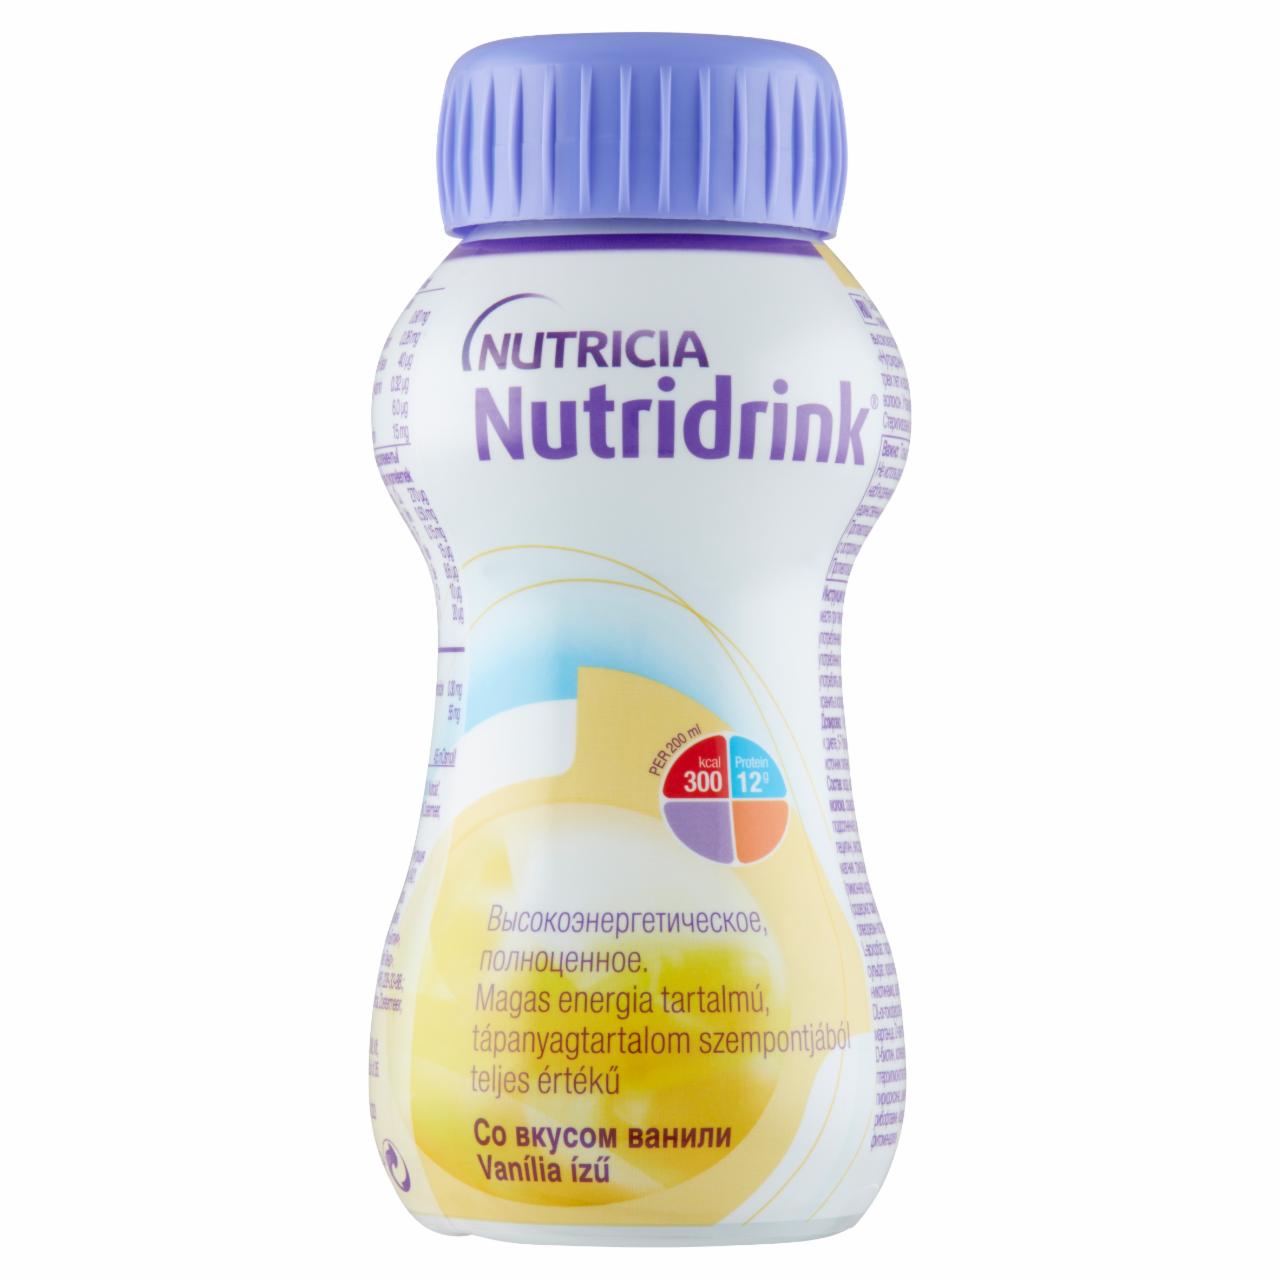 Képek - Nutridrink vanília ízű speciális gyógyászati célra szánt élelmiszer 200 ml